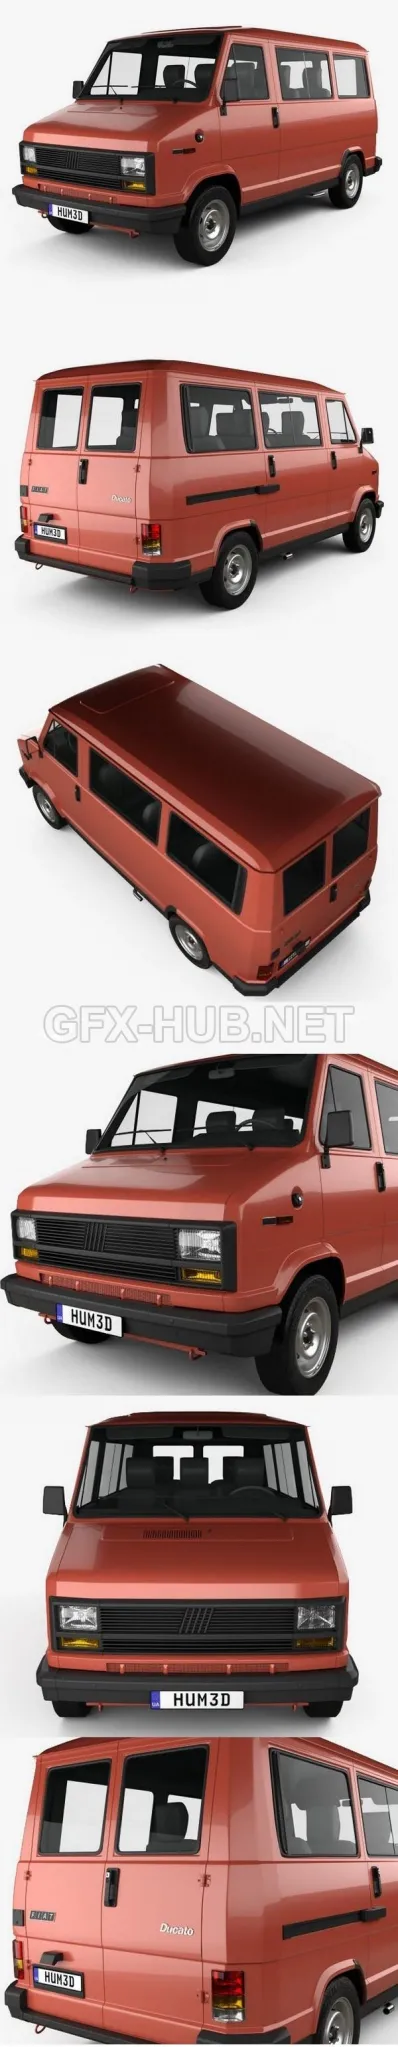 CAR – Fiat Ducato Passenger Van 1981  3D Model